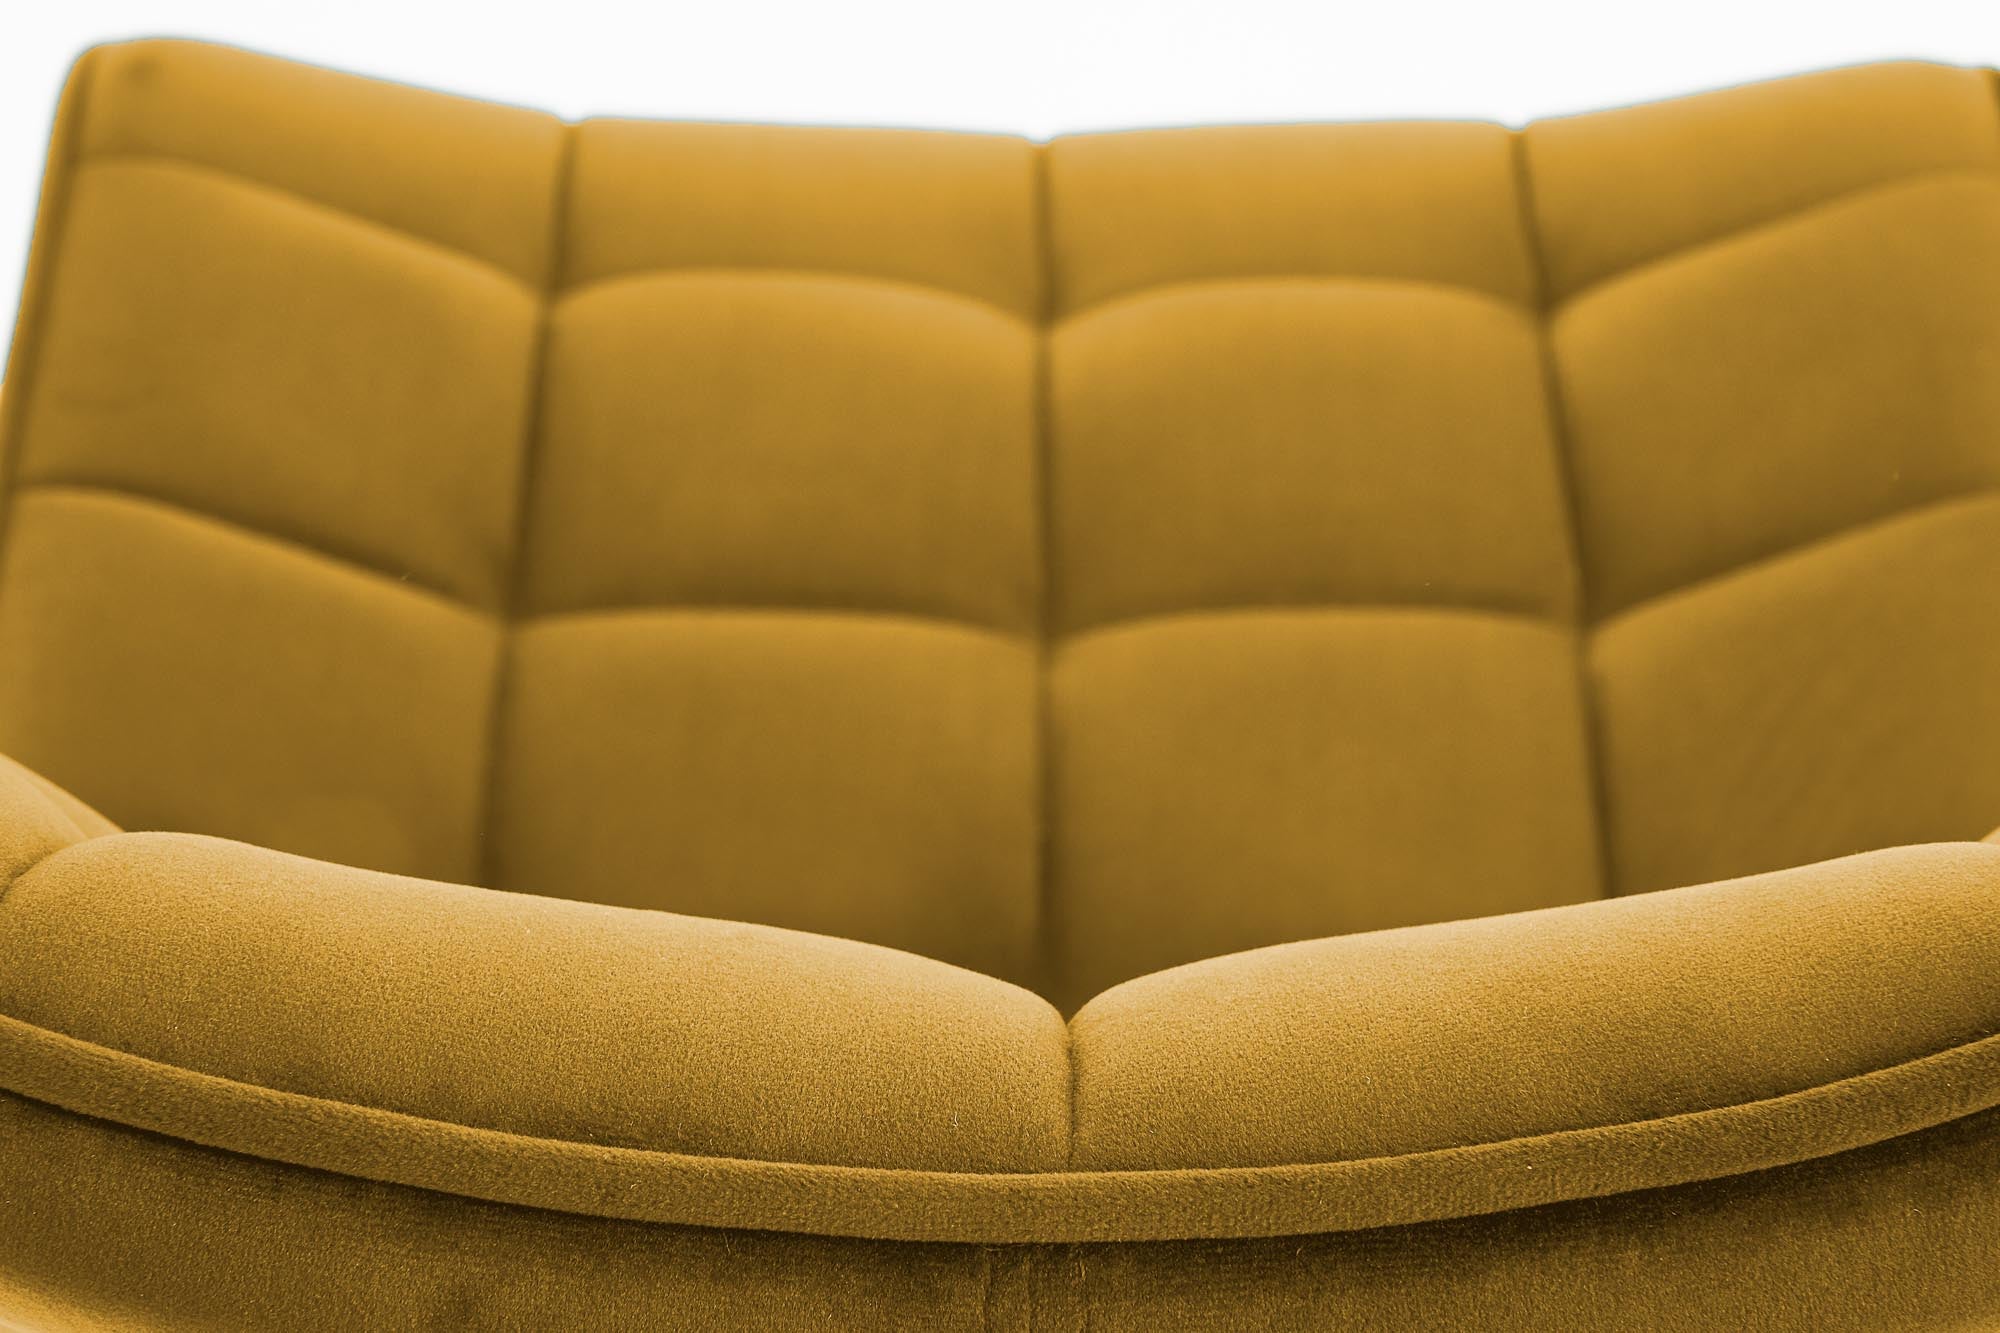 Kay szék (sárga) - Marco Mobili Bútoráruház - Szék